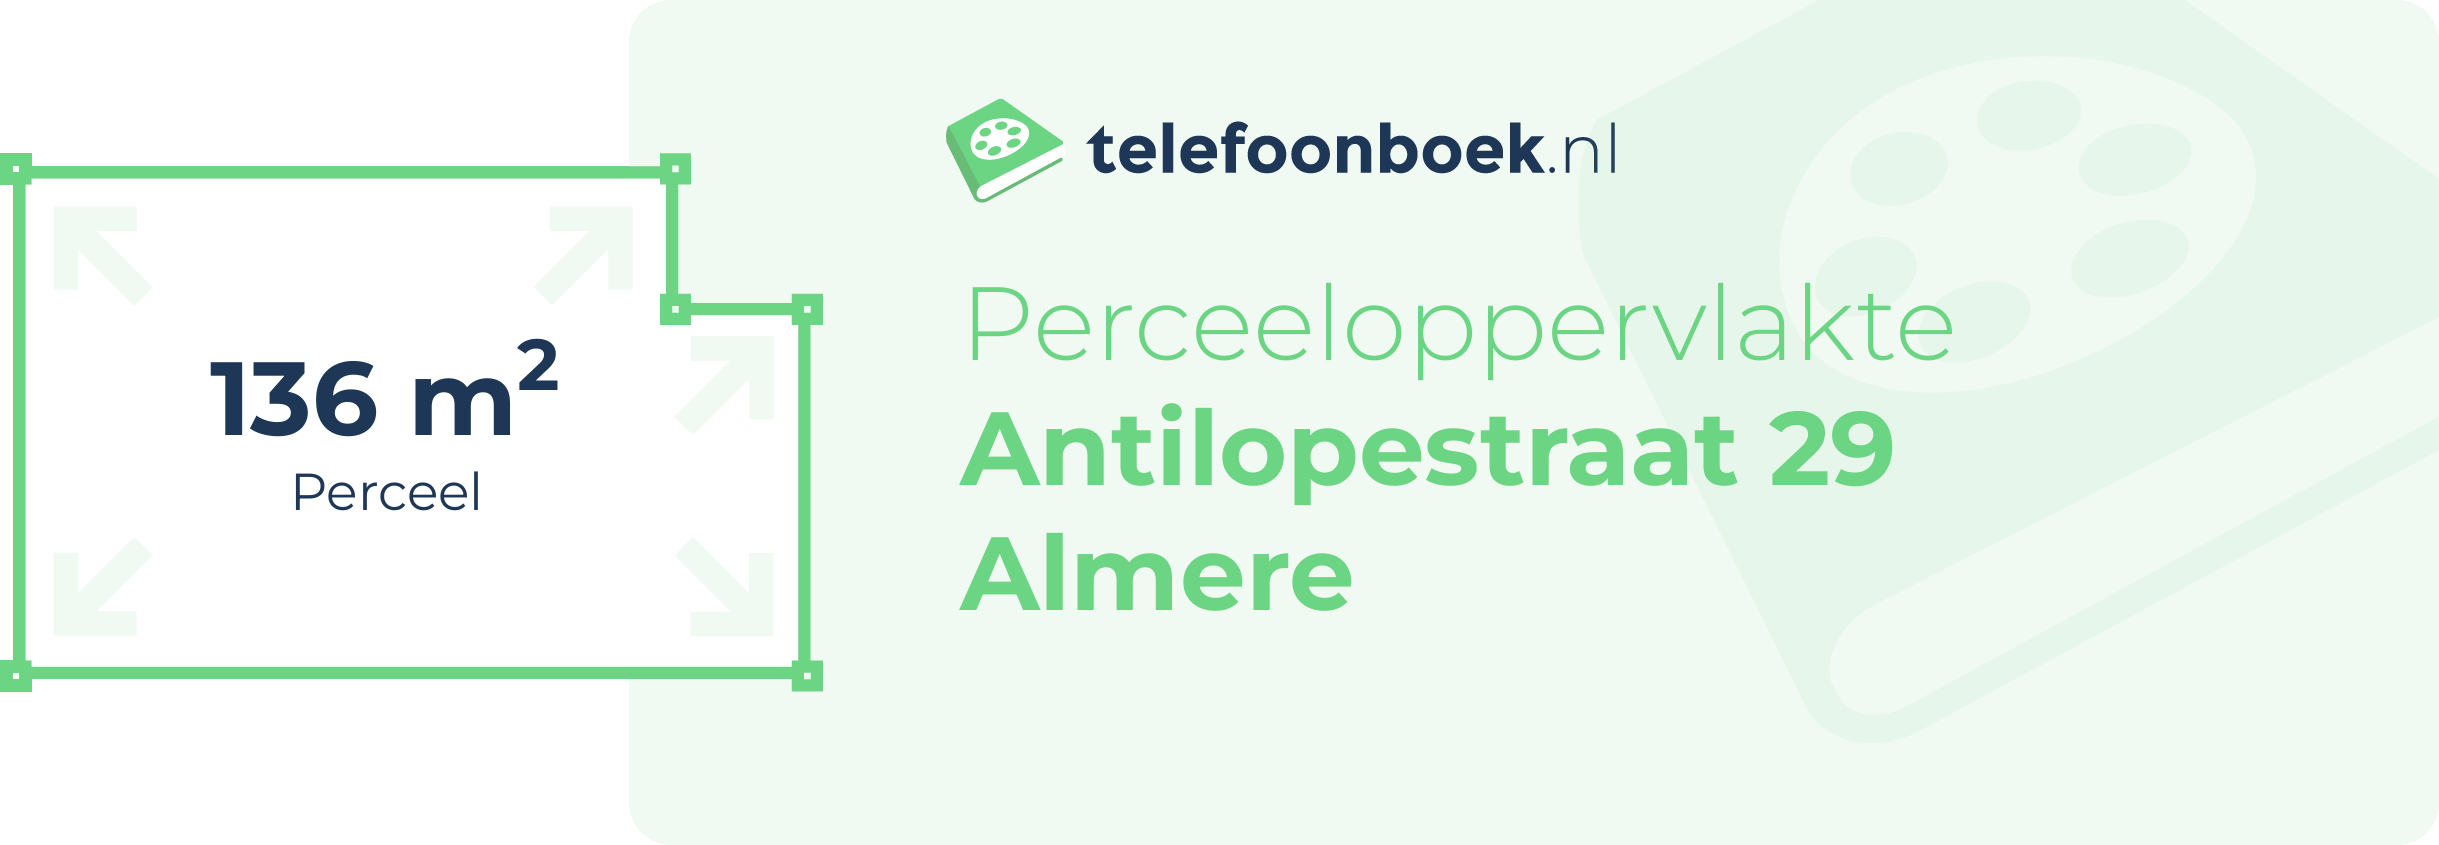 Perceeloppervlakte Antilopestraat 29 Almere